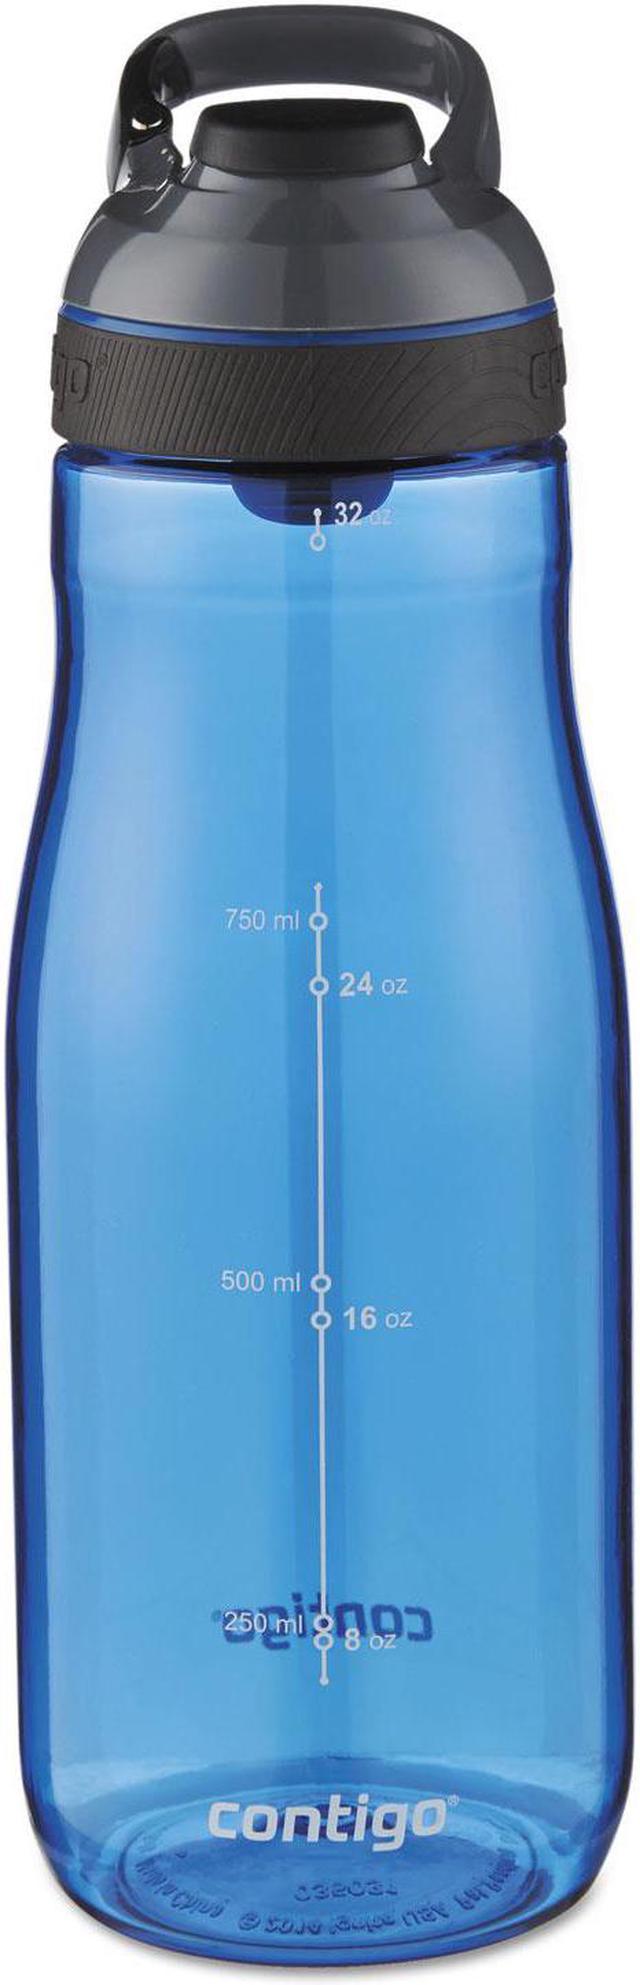 Contigo Cortland Water Bottles With Autoseal Technology